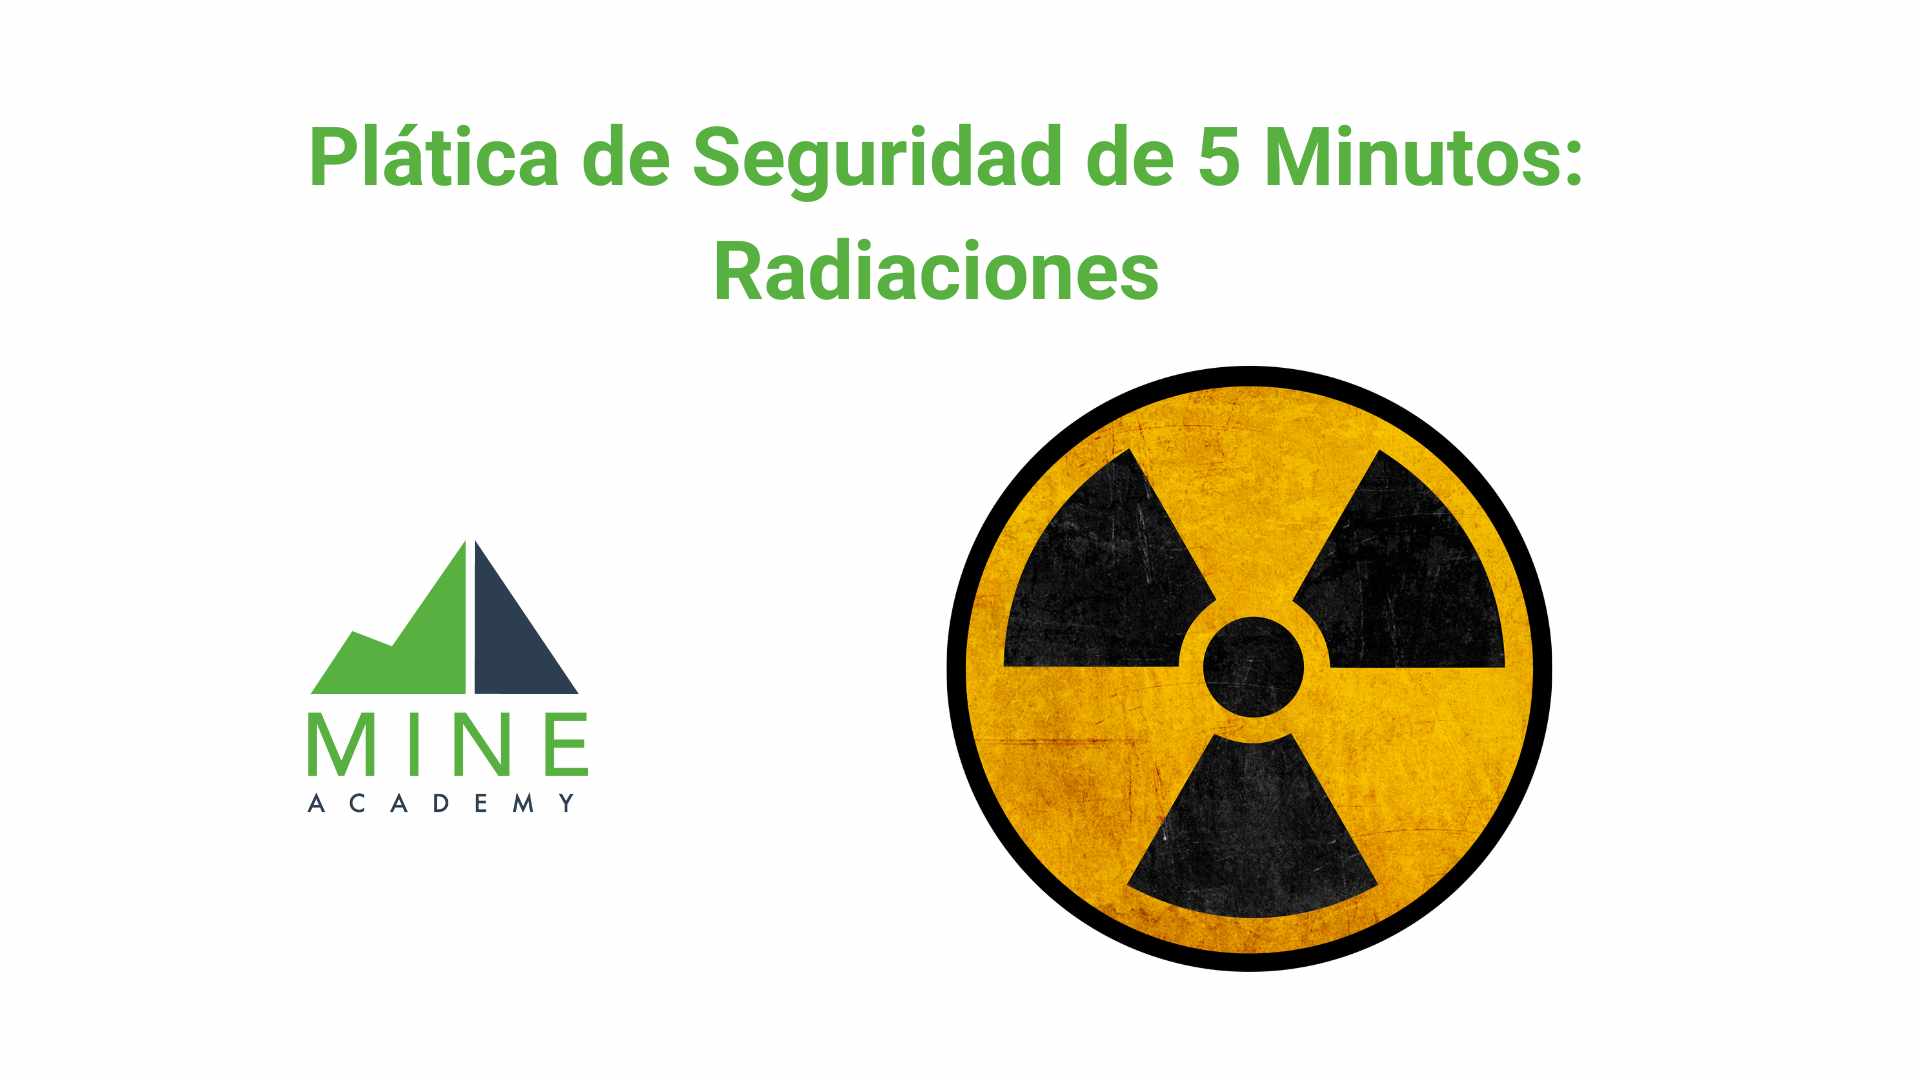 Platica de seguridad de 5 minutos: Radiaciones